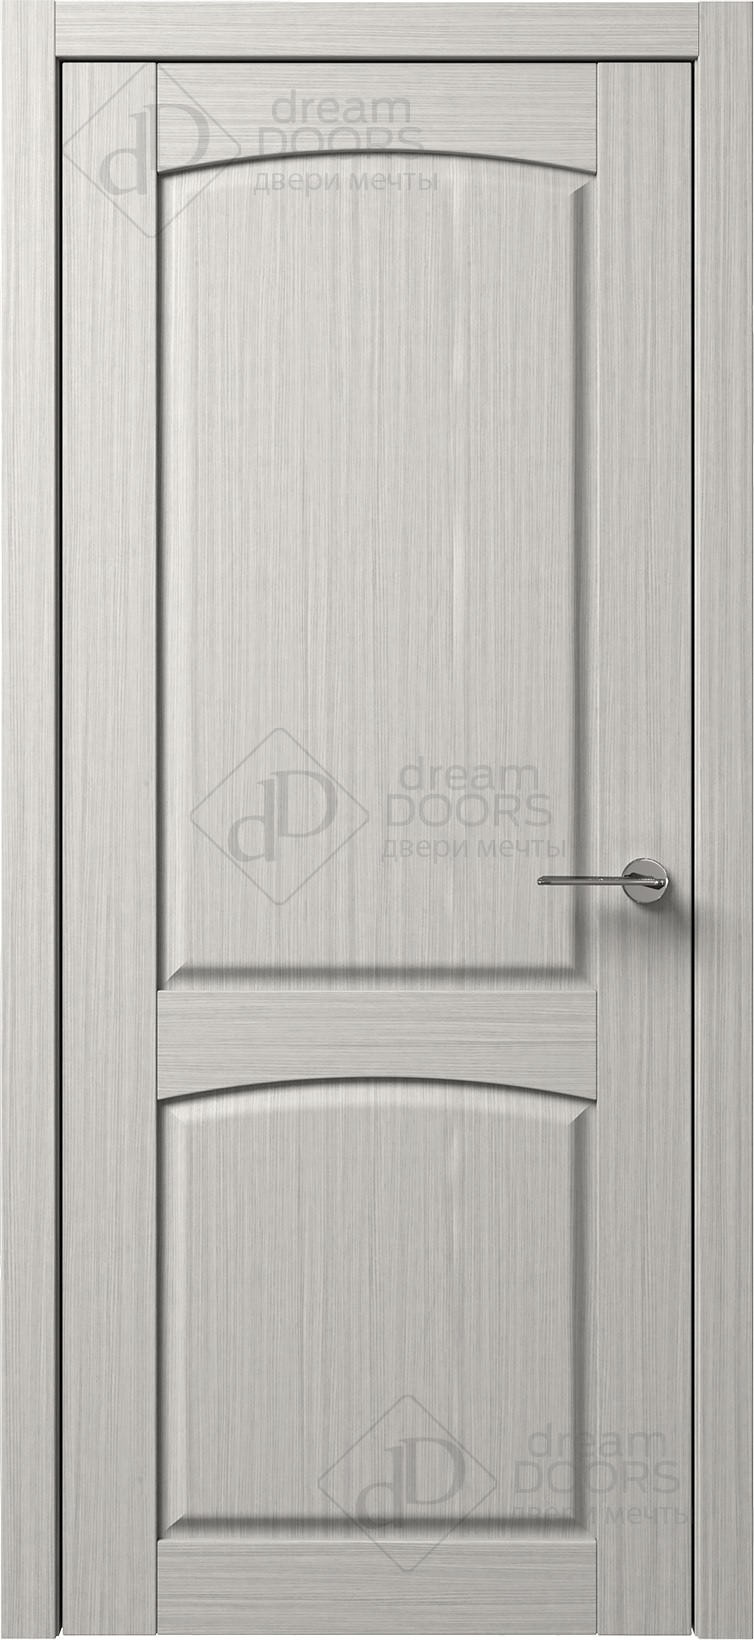 Dream Doors Межкомнатная дверь B3-3, арт. 5553 - фото №1